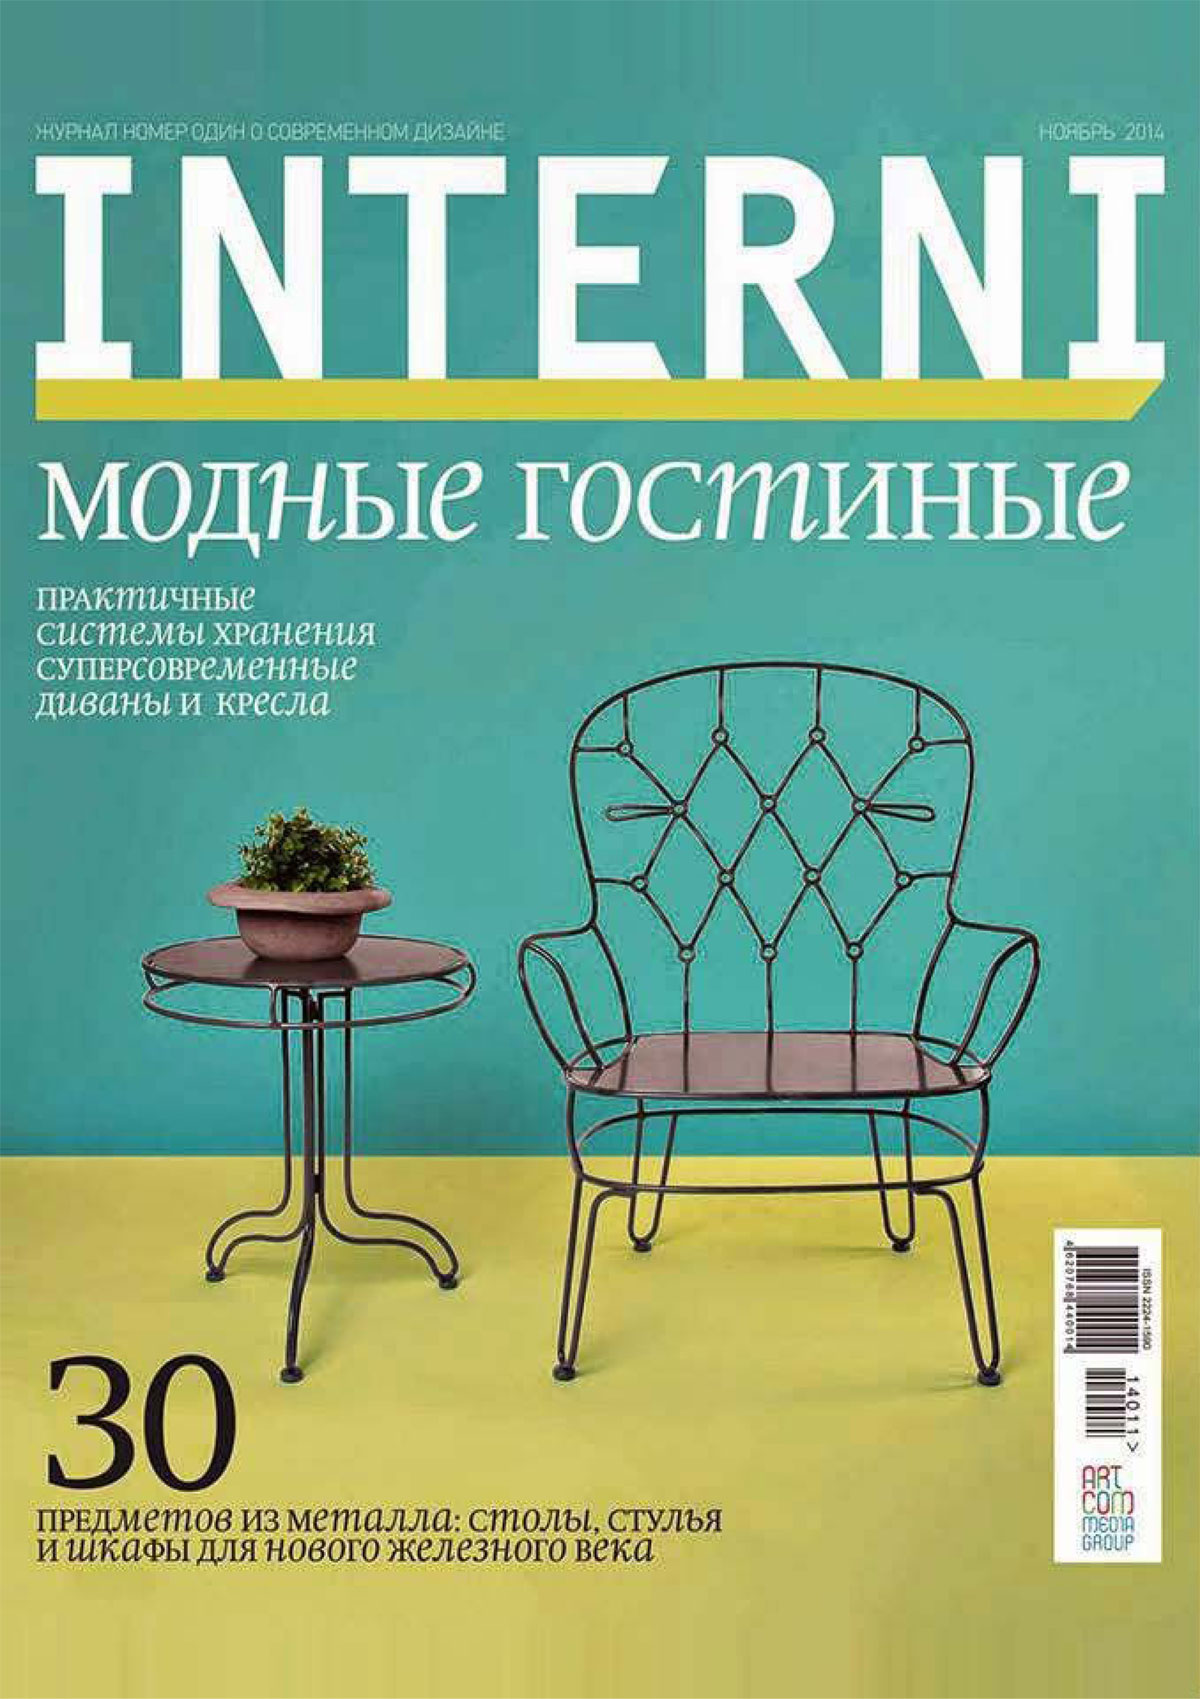 Interni Russia cover 2014